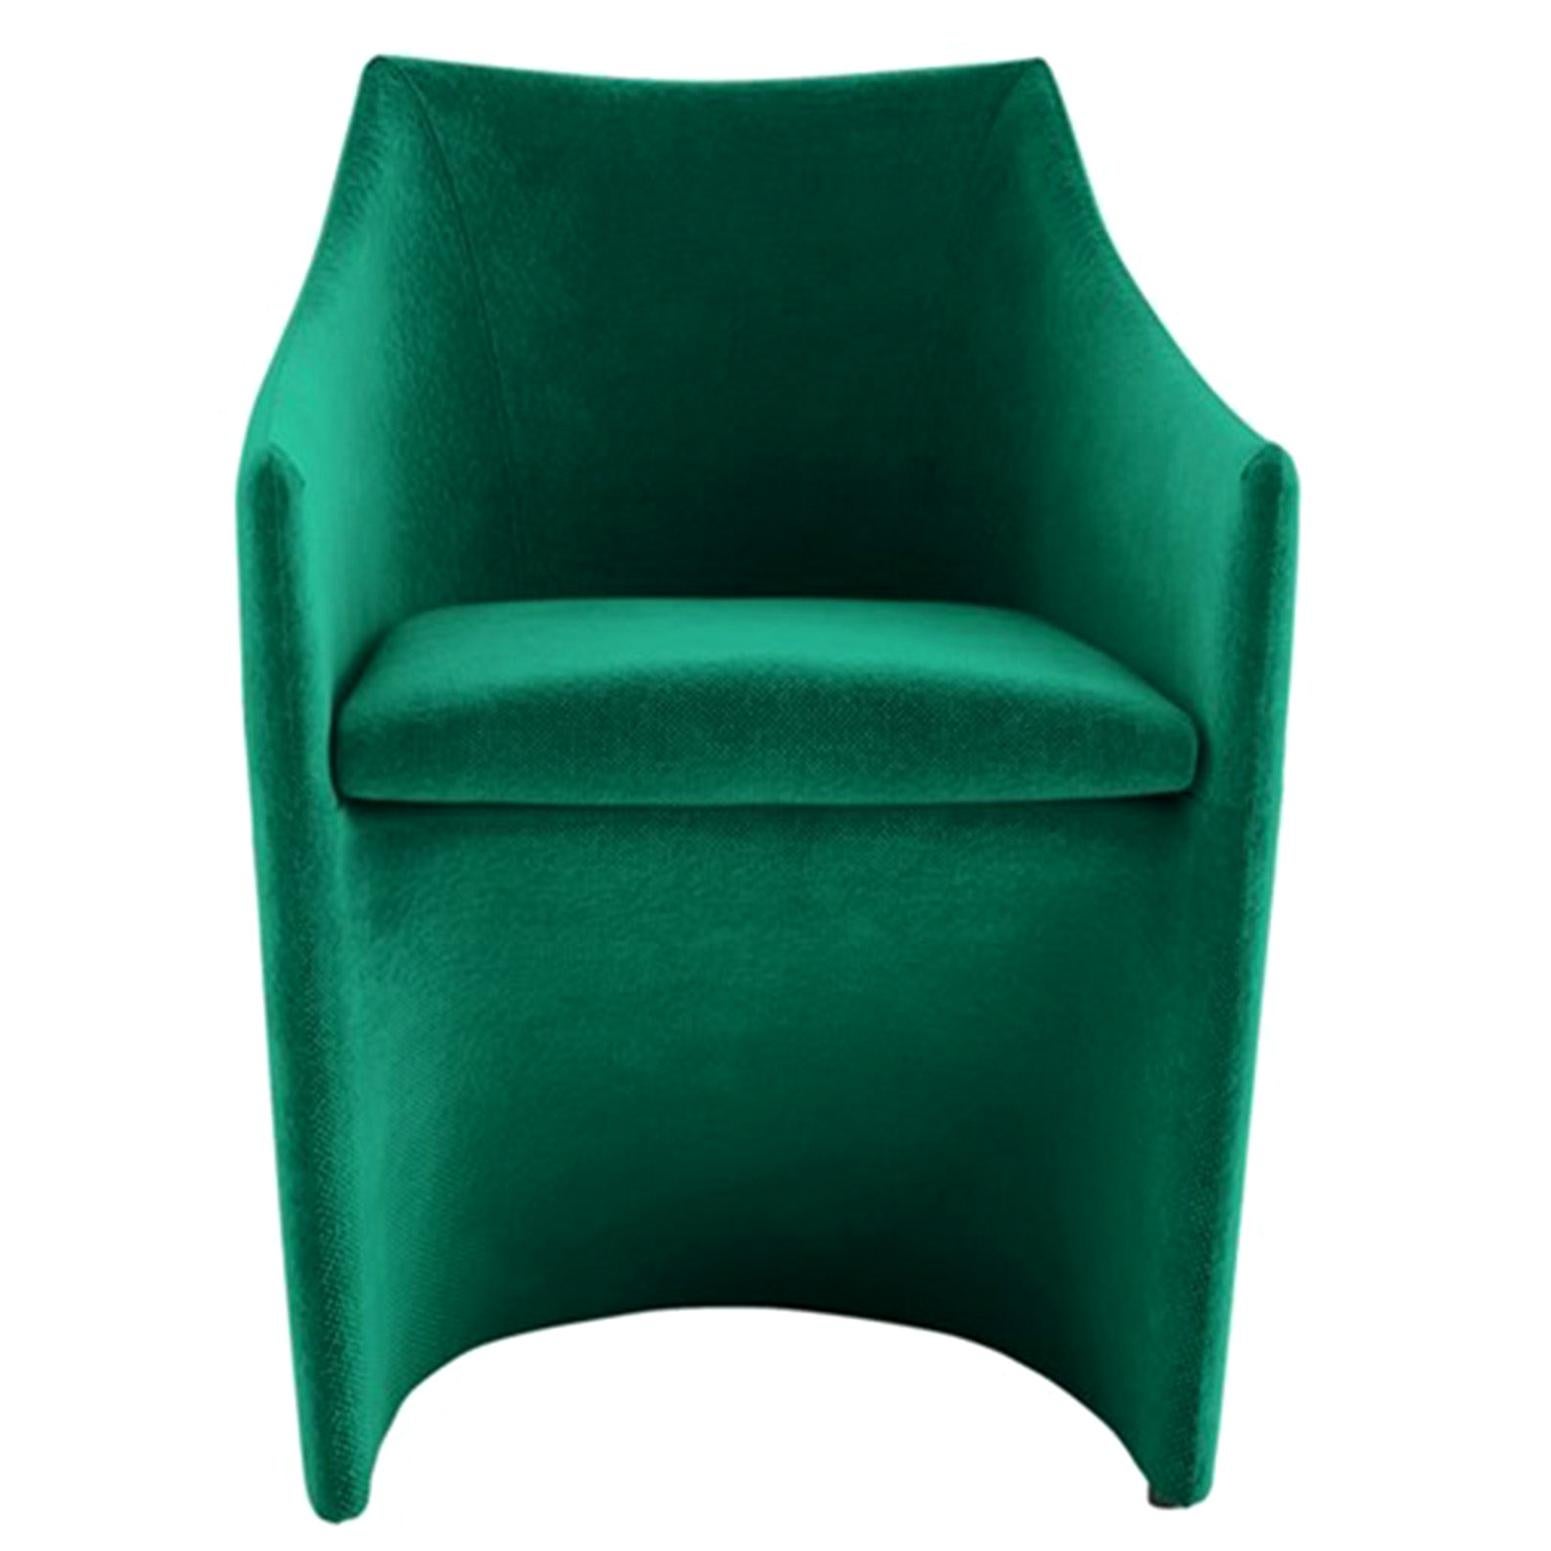 Ensemble de deux fauteuils Tacchini personnalisables Mayfair conçus par Christophe Pillet